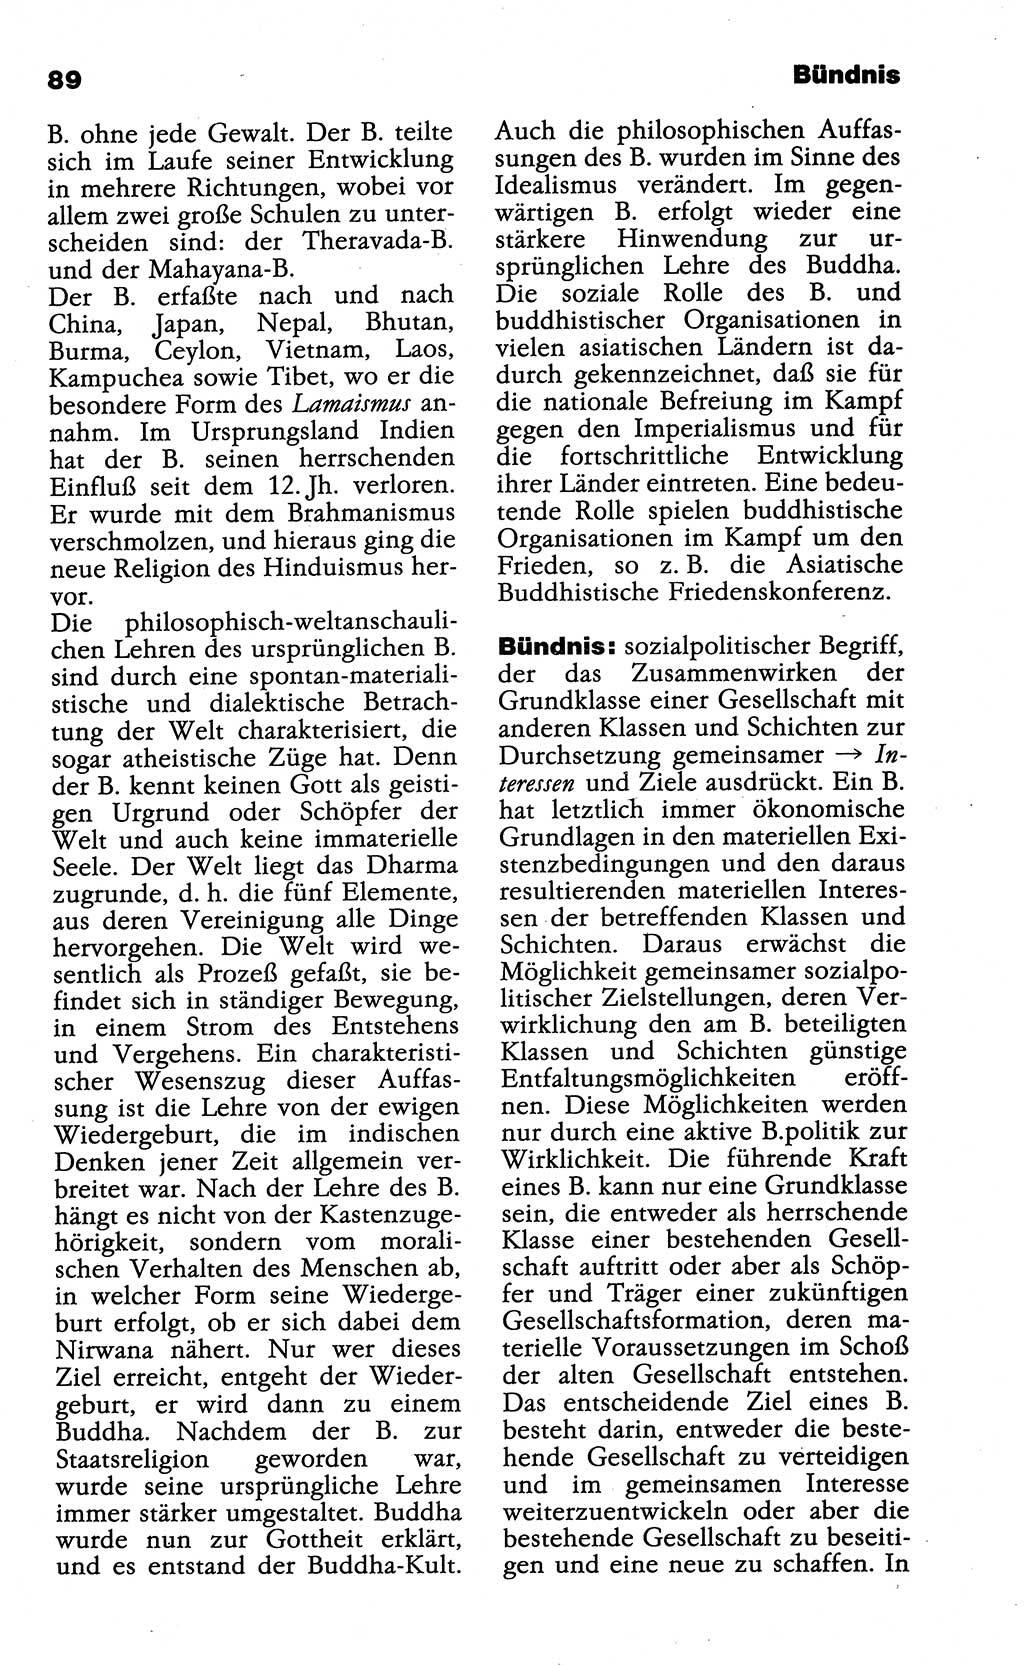 Wörterbuch der marxistisch-leninistischen Philosophie [Deutsche Demokratische Republik (DDR)] 1985, Seite 89 (Wb. ML Phil. DDR 1985, S. 89)